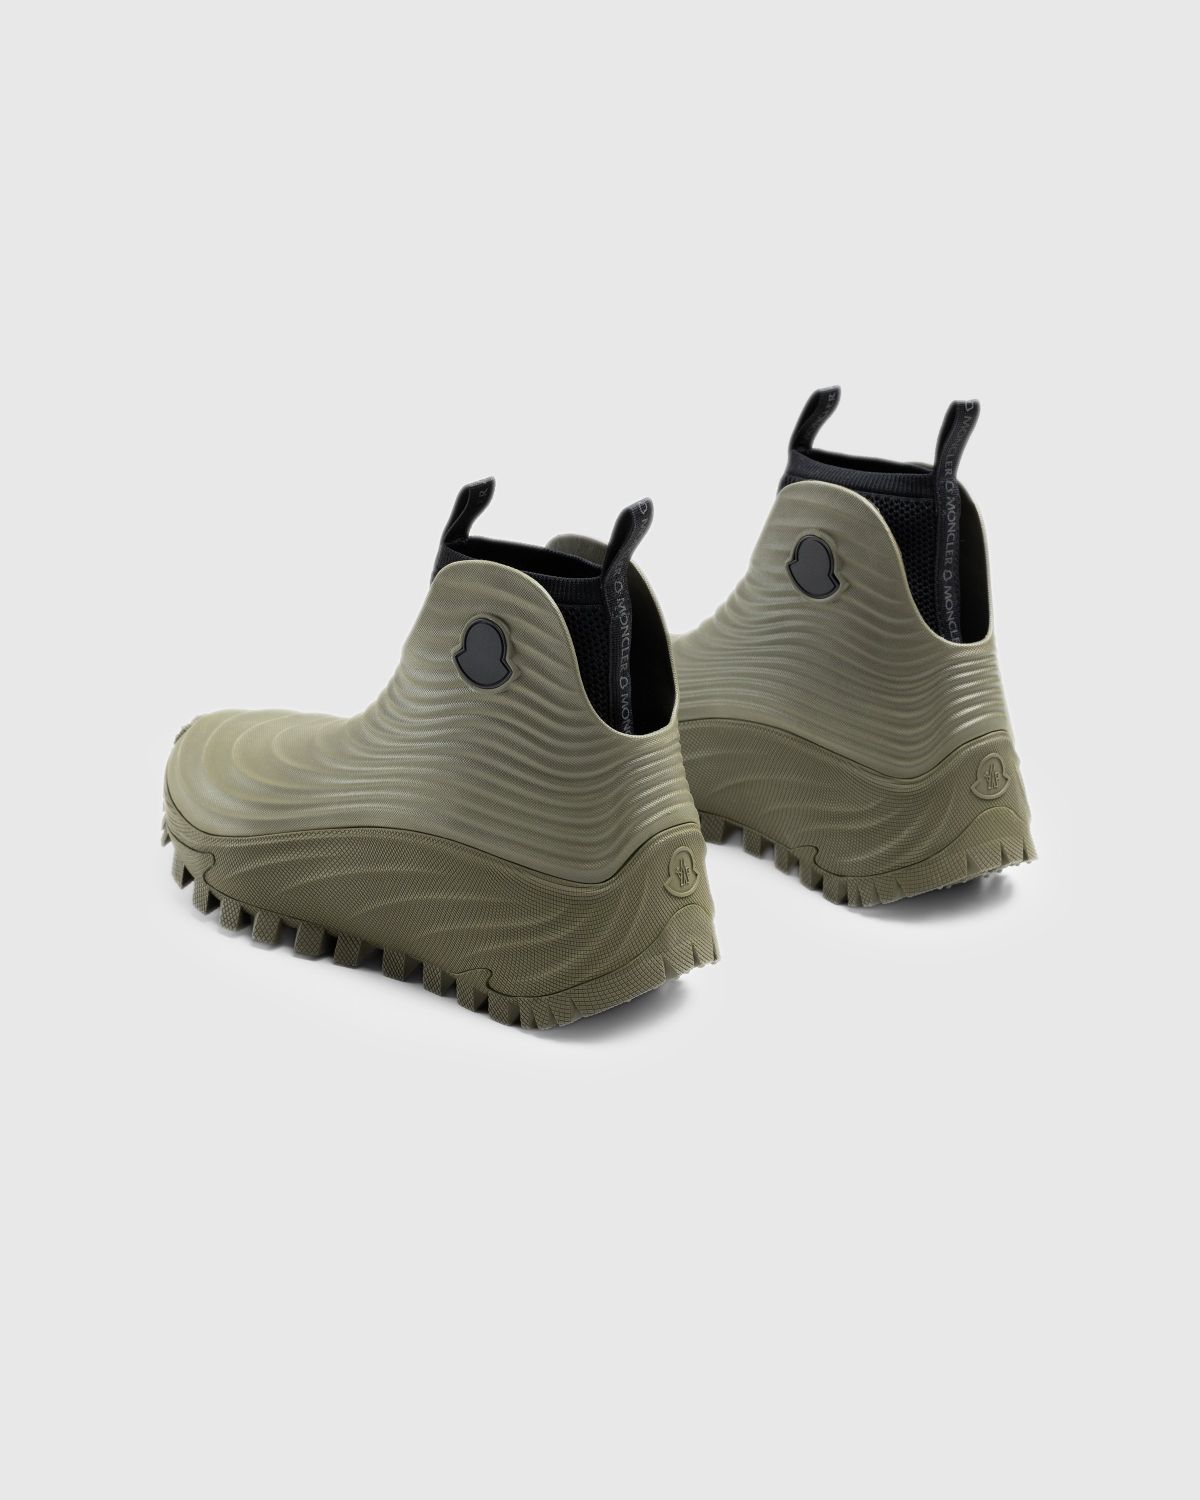 Moncler – Acqua High Rain Boots Khaki - Rubber Boots - Brown - Image 4